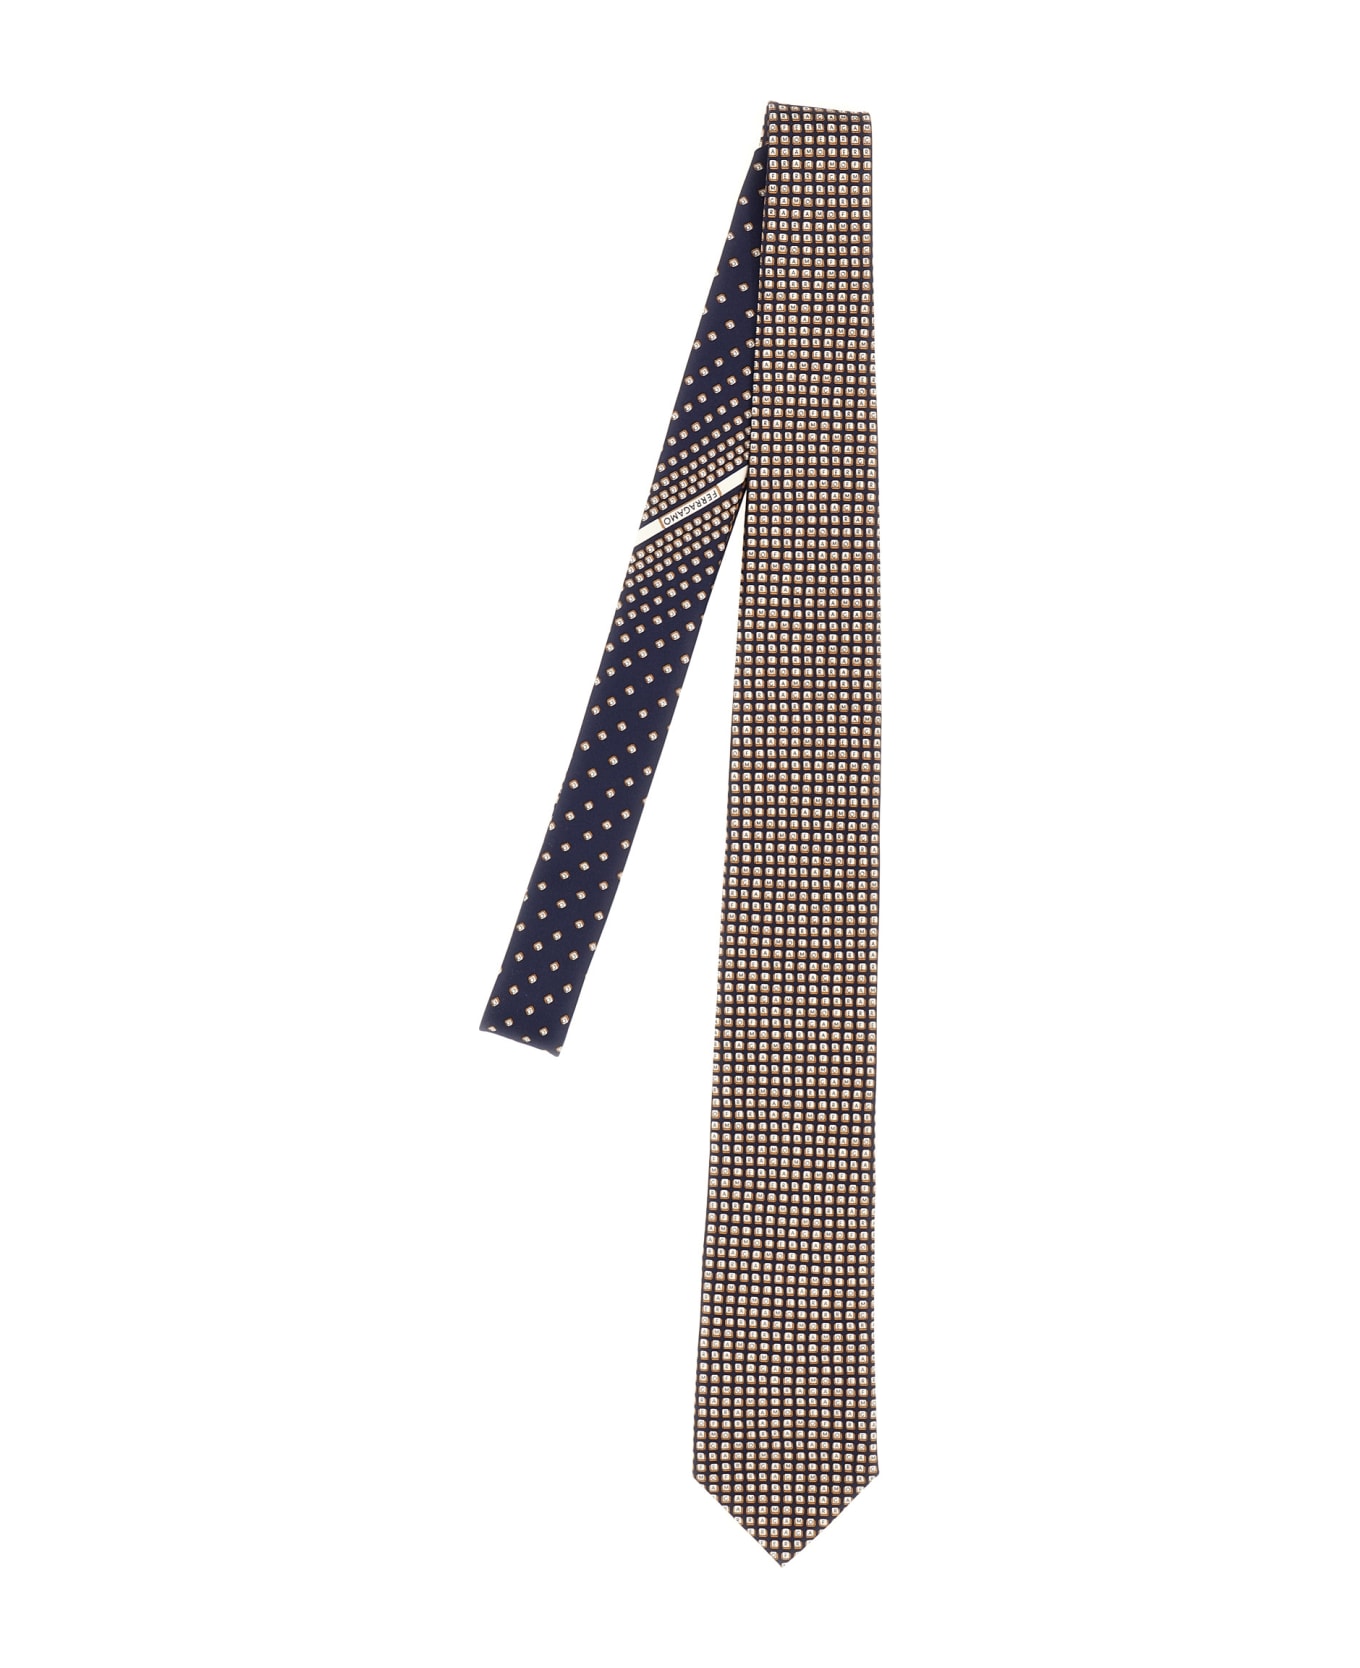 Ferragamo Printed Tie - Multicolor ネクタイ